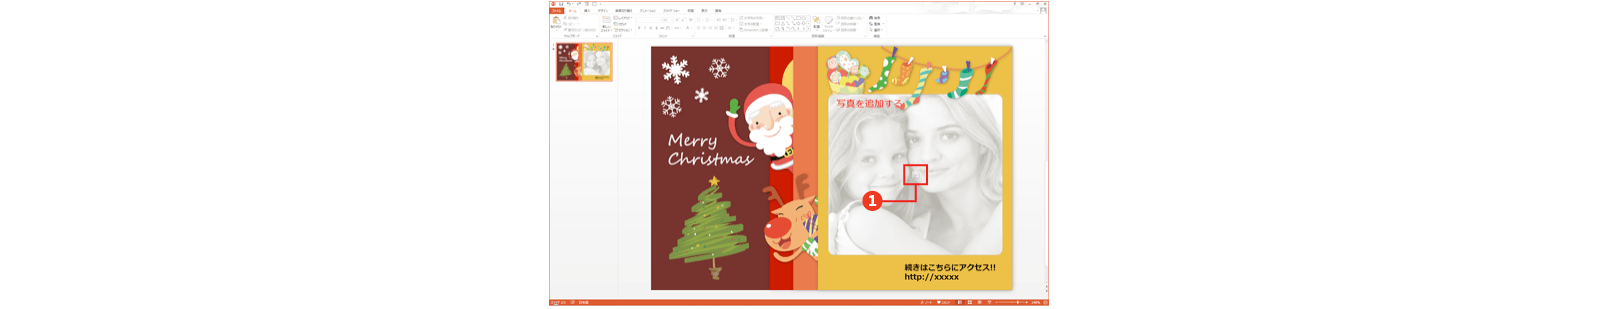 クリスマス カードの作り方 クリスマス 特集 無料テンプレート公開中 Microsoft Office 楽しもう Office